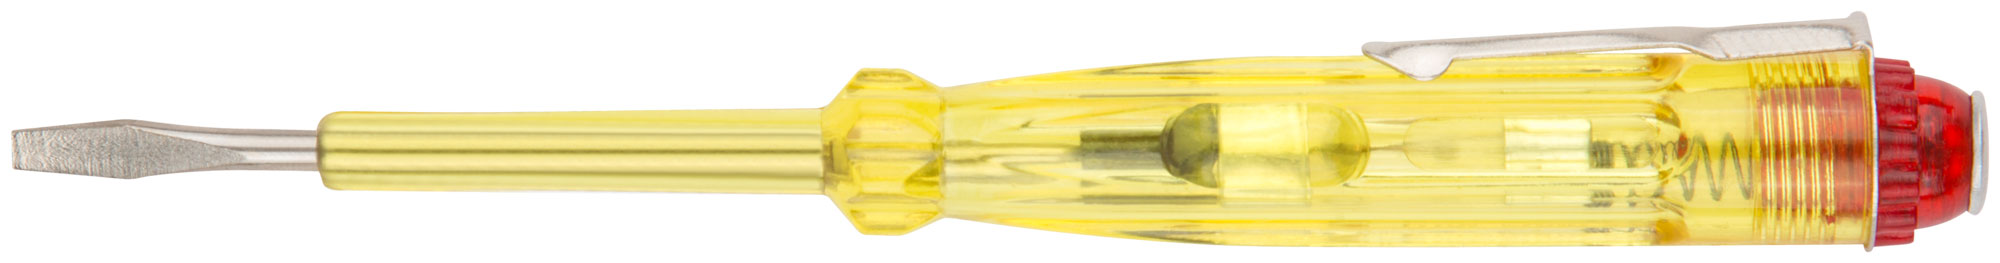 Отвертка индикаторная, желтая ручка 100 - 500 В, 140 мм КУРС 56501 отвертка индикаторная желтая ручка 100 500 в 190 мм курс 56502